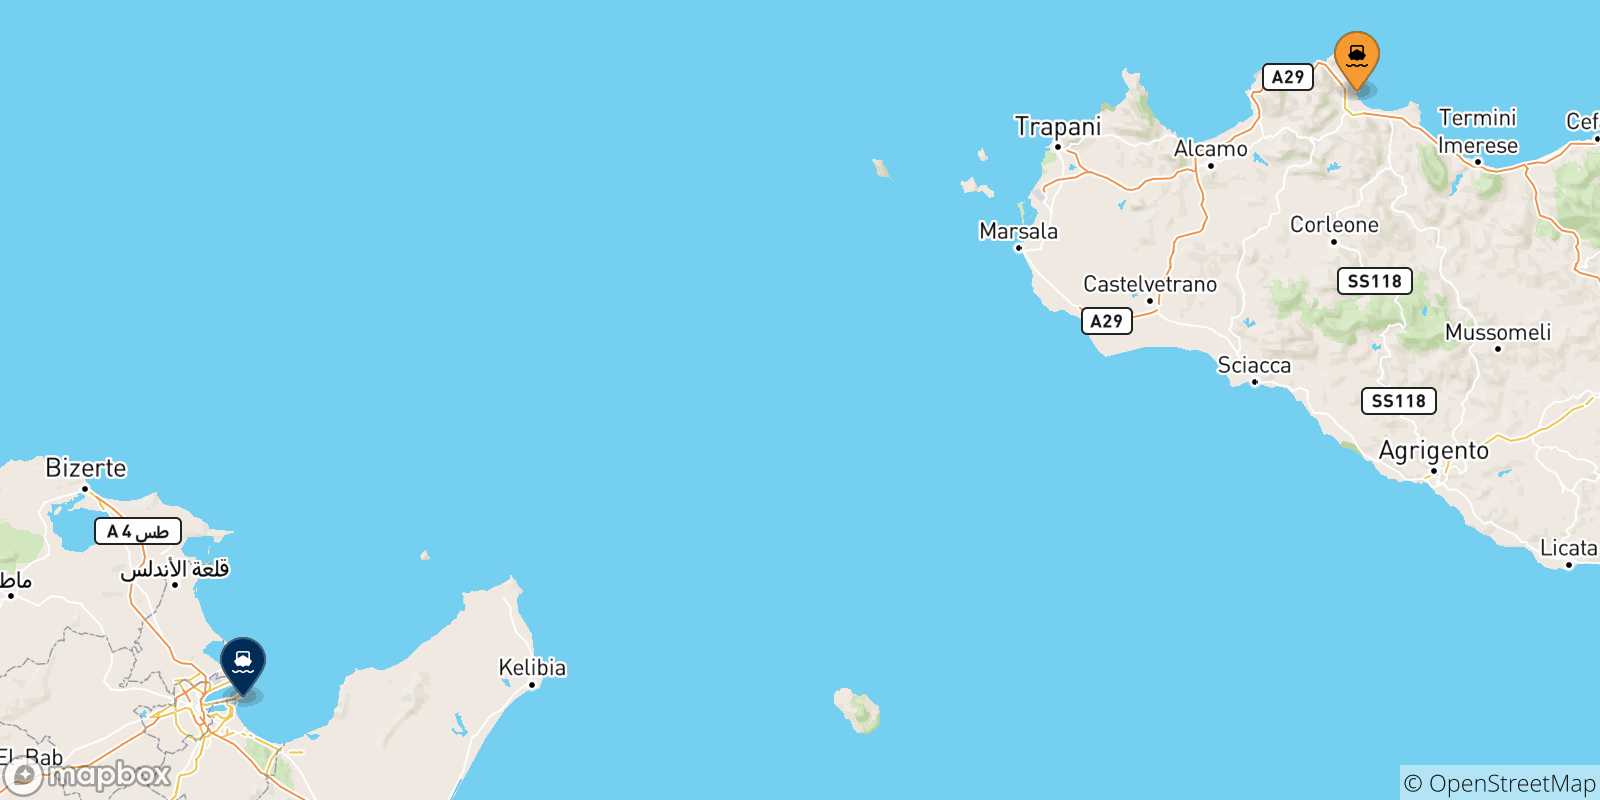 Mappa delle possibili rotte tra Palermo e la Tunisia